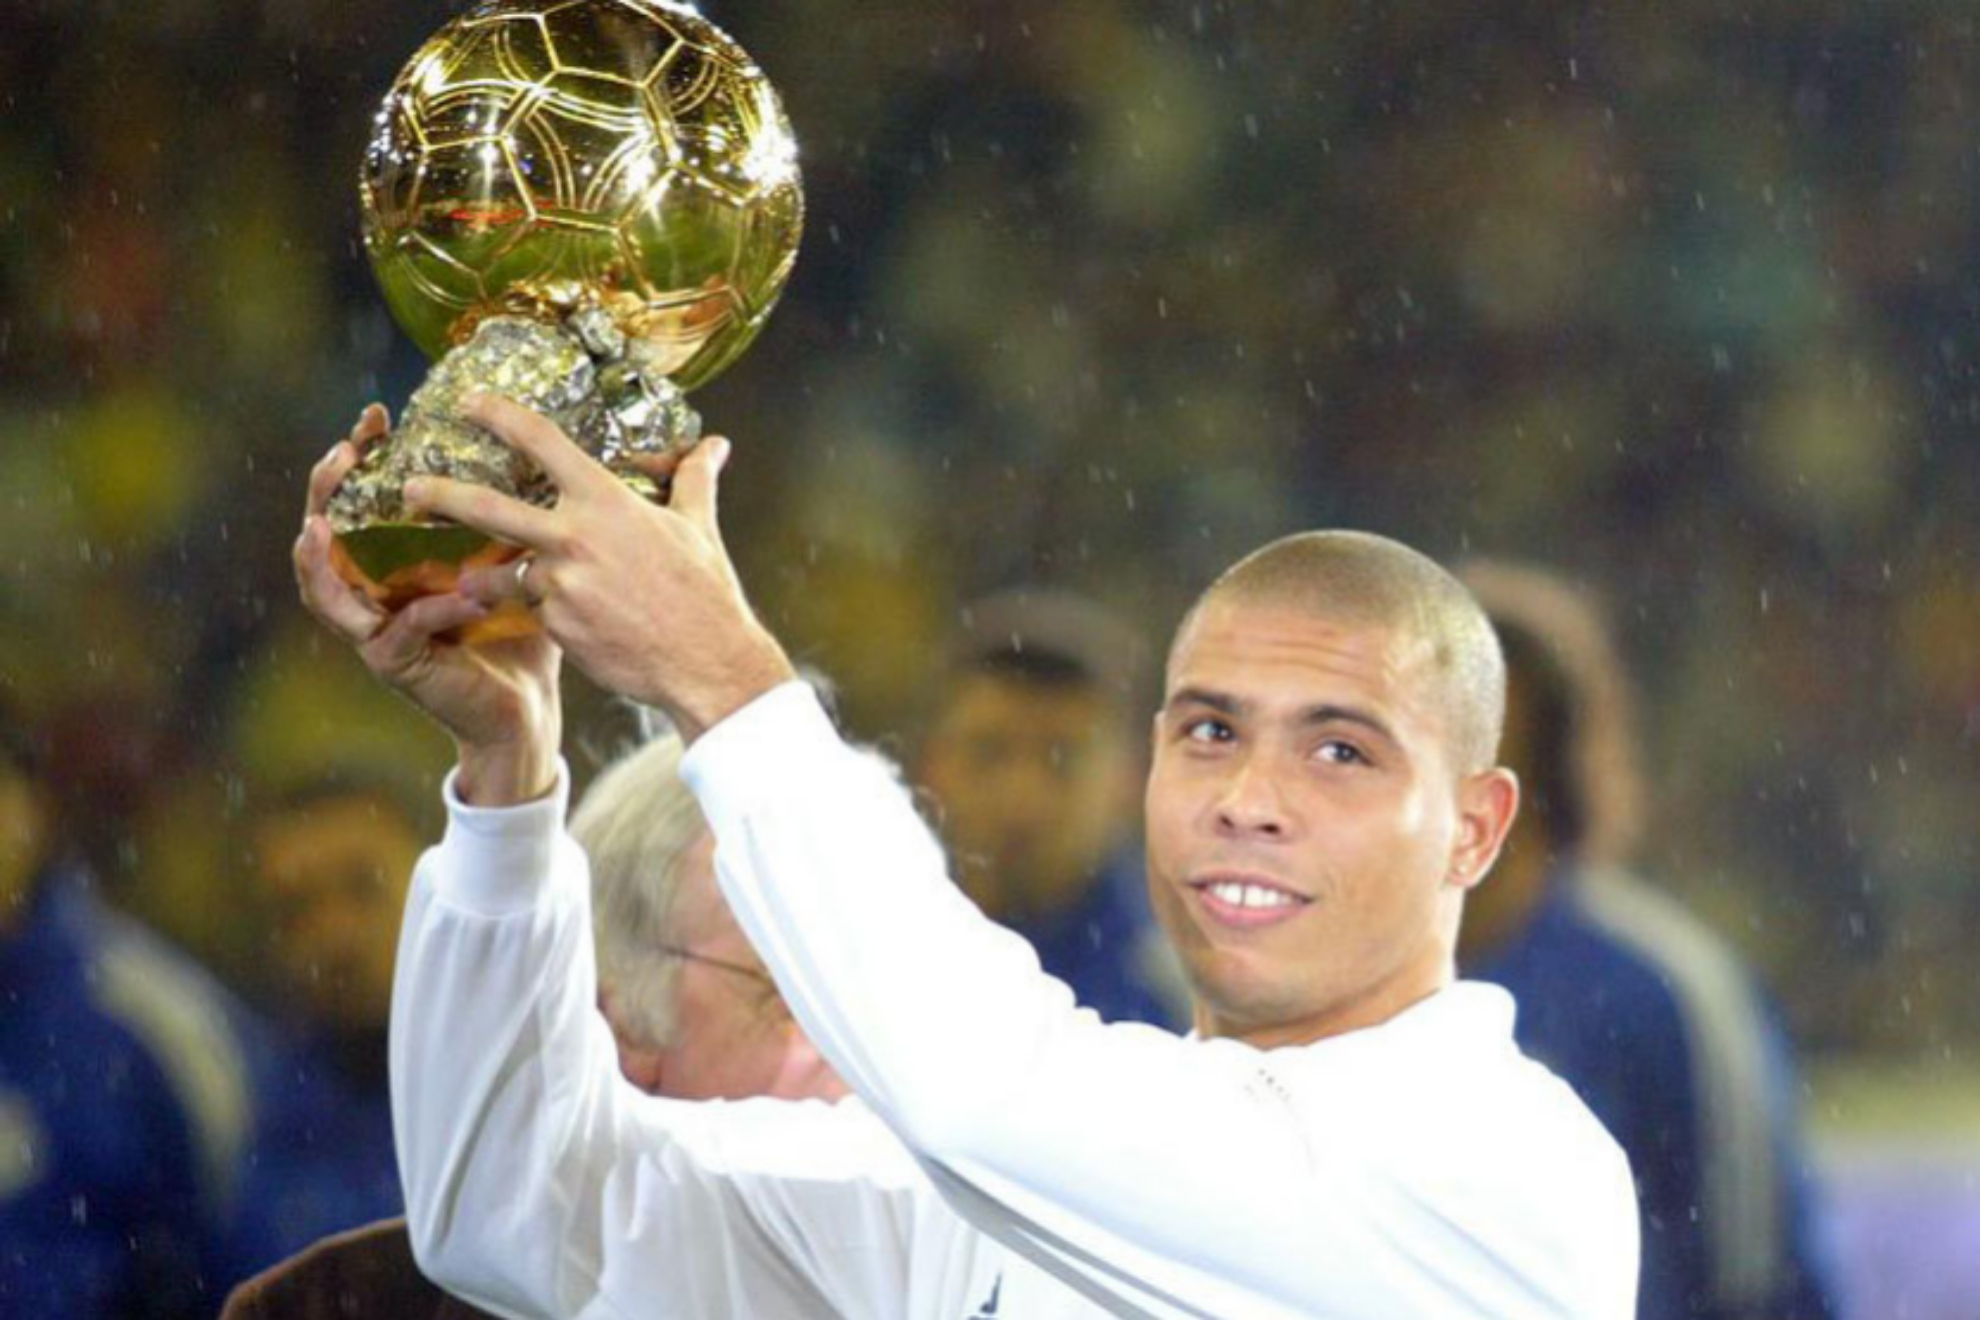 ¿Qué jugadores del Real Madrid han ganado el Balón de Oro? Benzema ha sido el último